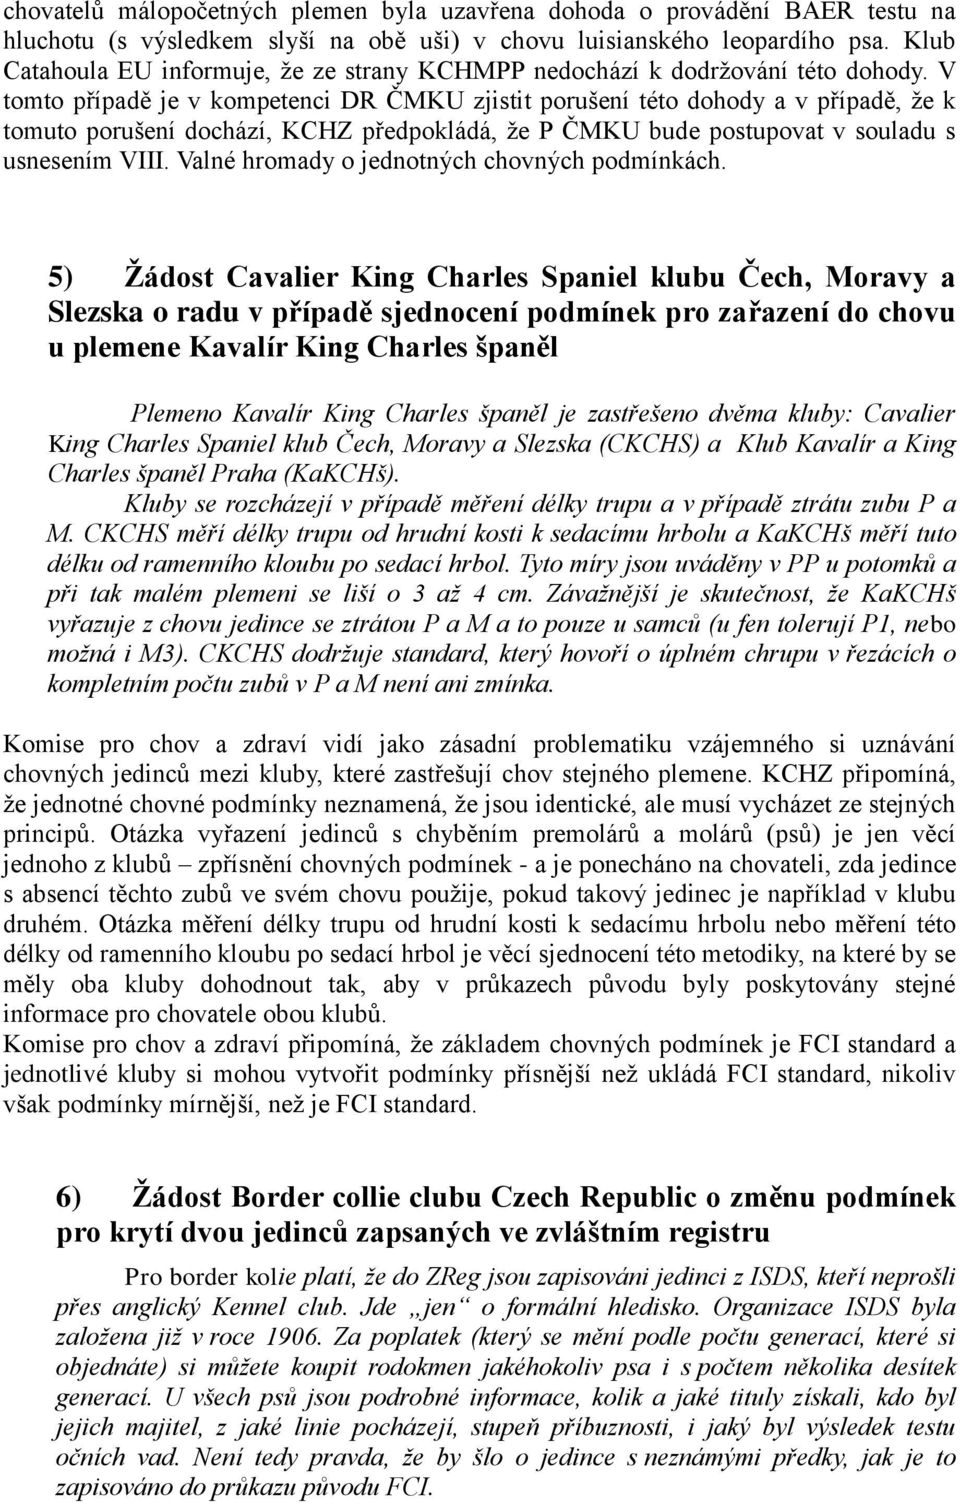 V tomto případě je v kompetenci DR ČMKU zjistit porušení této dohody a v případě, že k tomuto porušení dochází, KCHZ předpokládá, že P ČMKU bude postupovat v souladu s usnesením VIII.